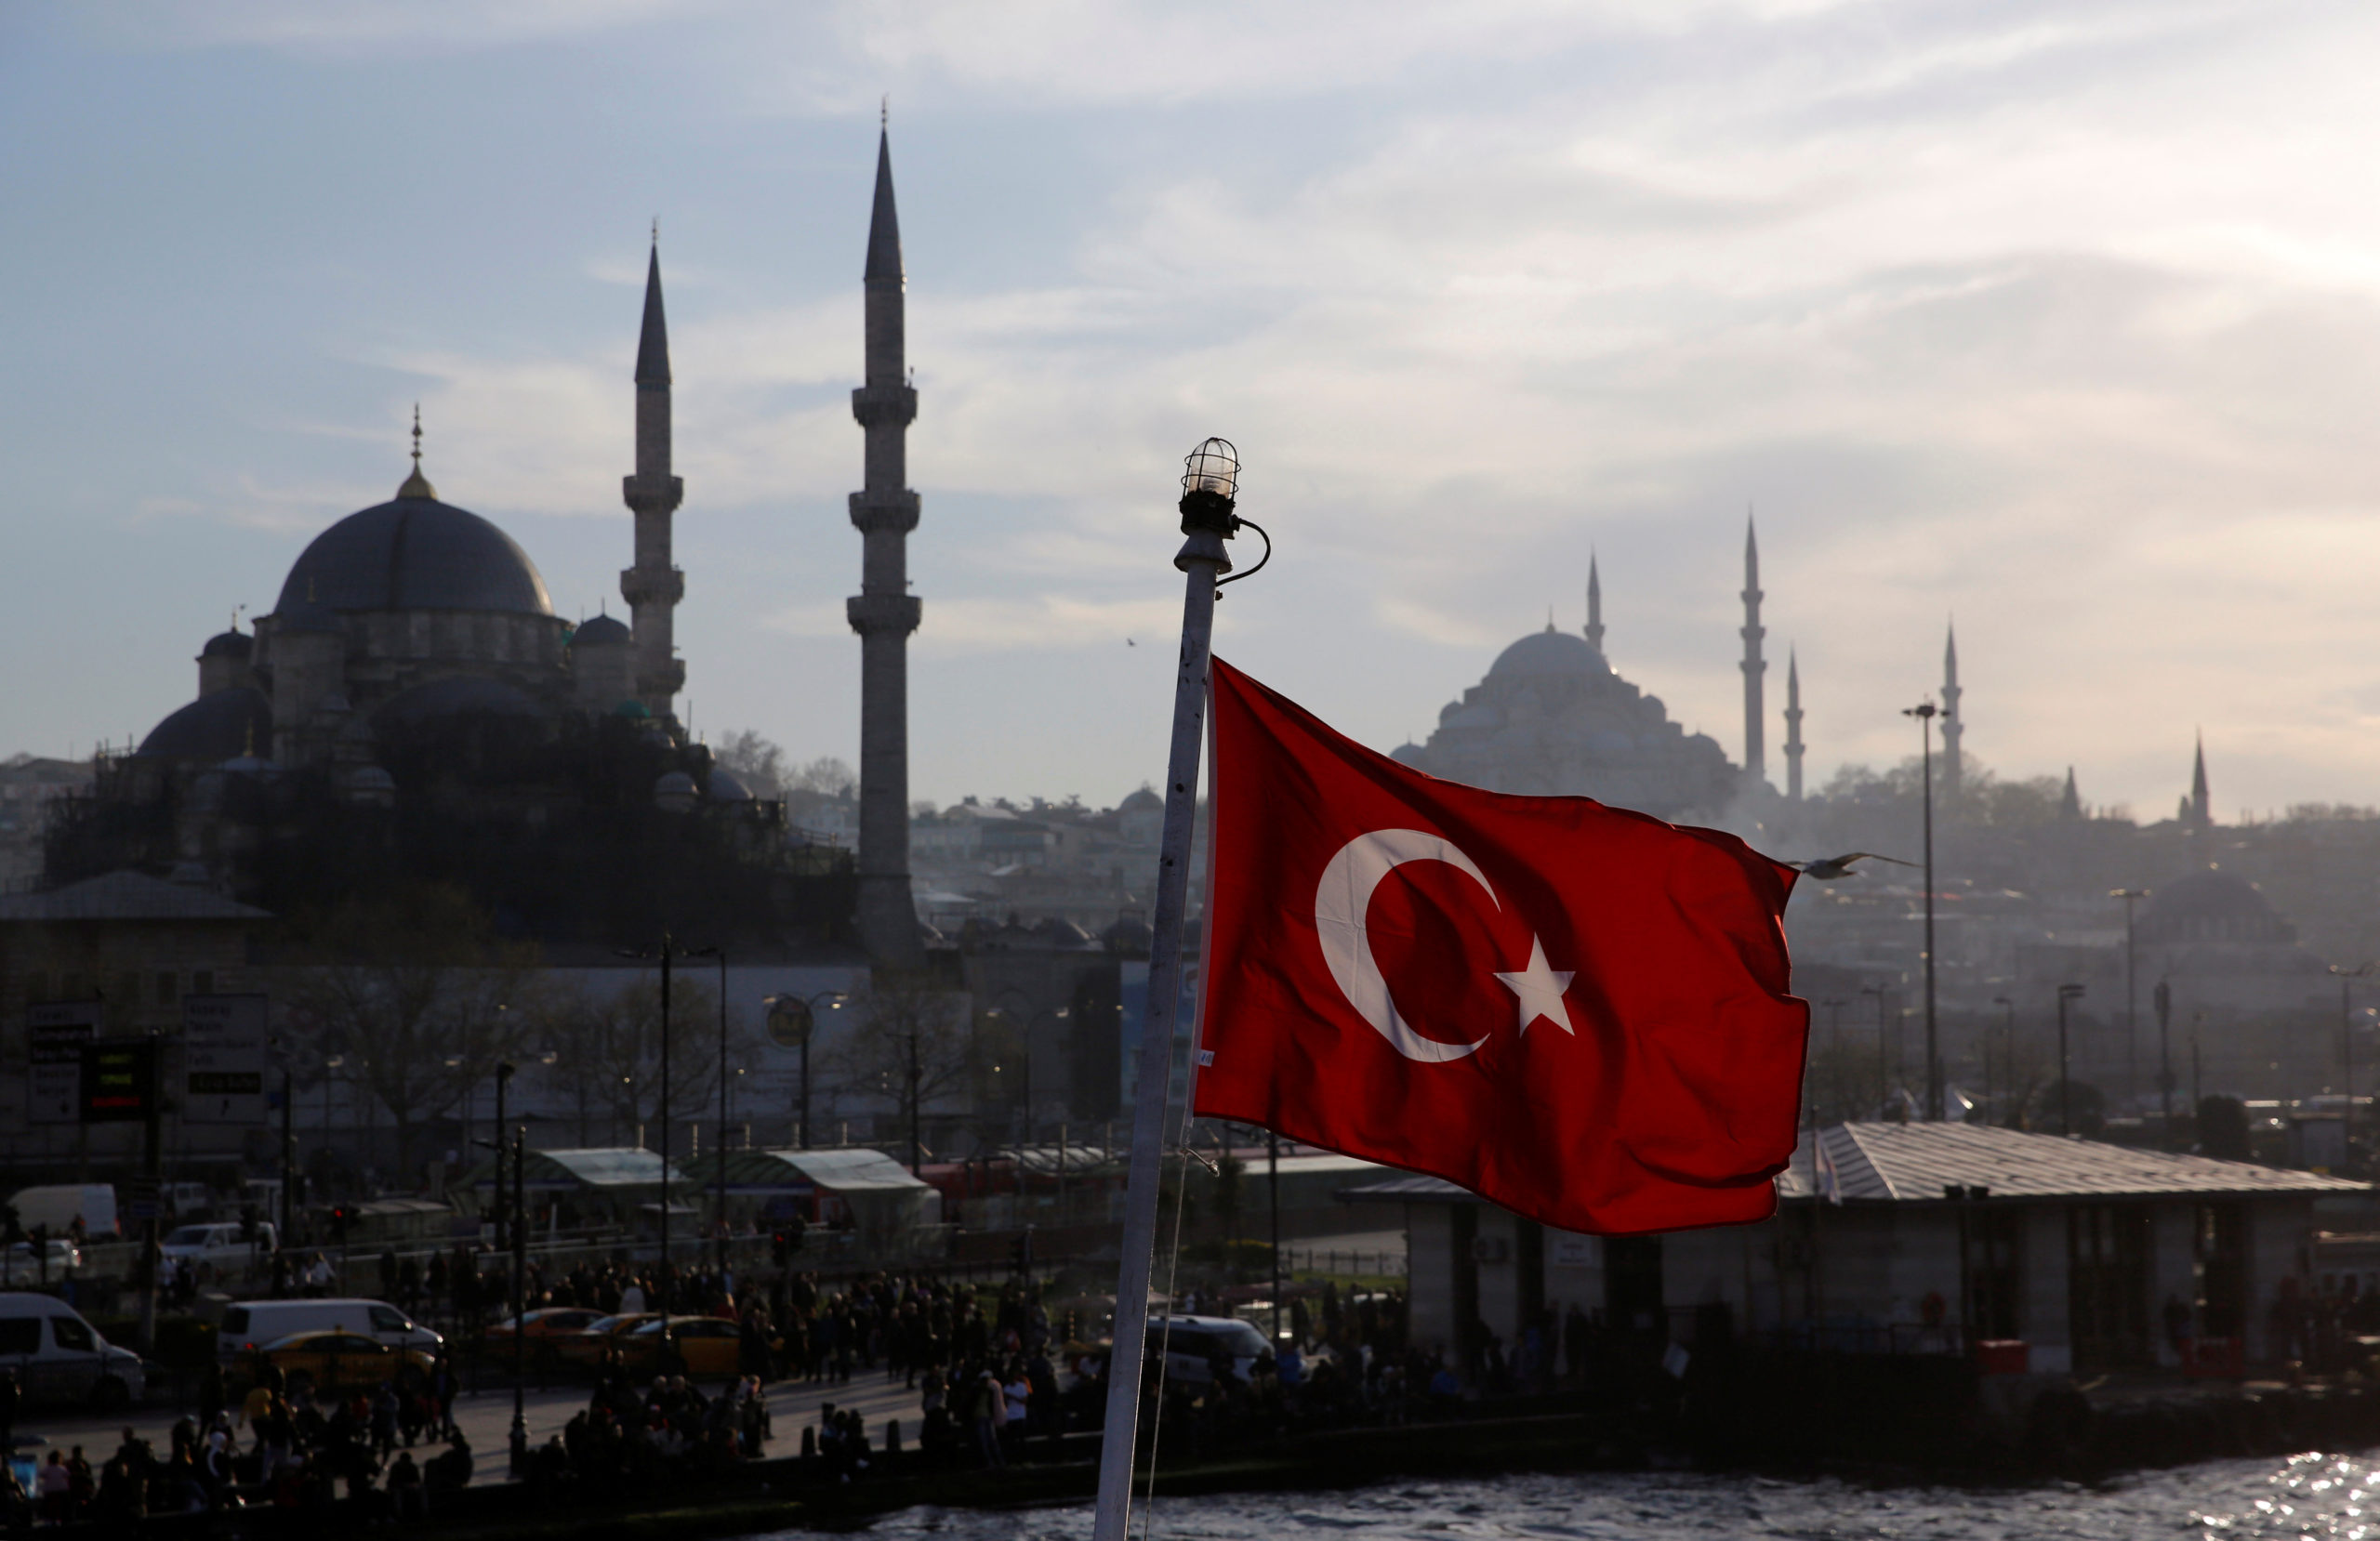 Les "excès" turcs vont au-delà d'une "querelle franco-turque", selon l'Elysée